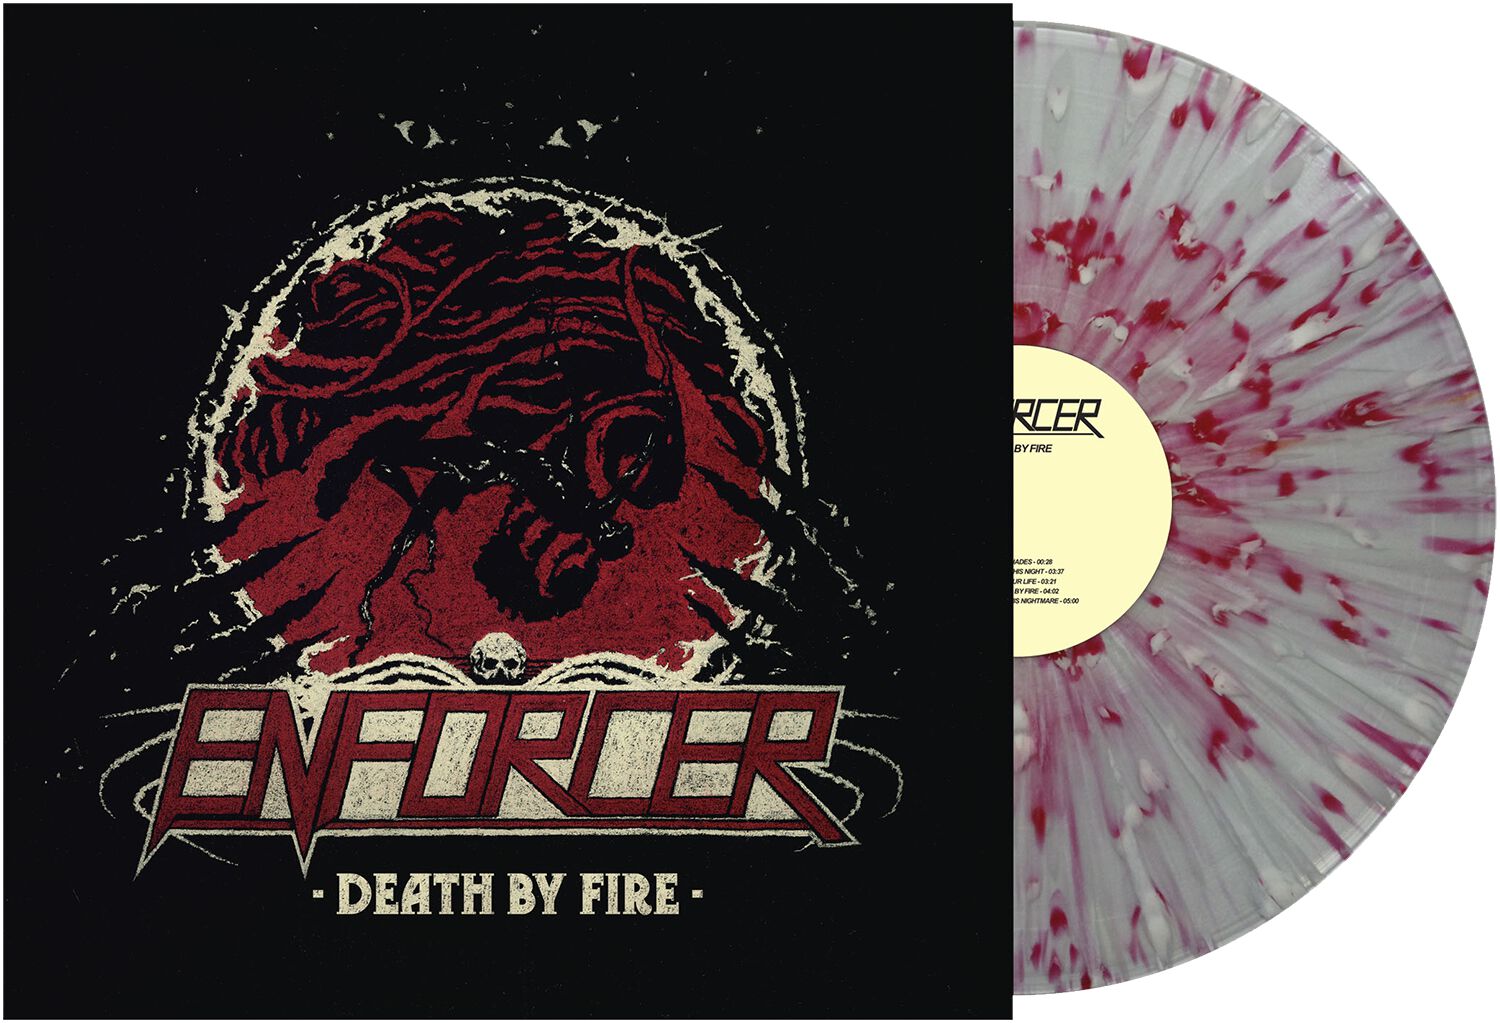 Image of Enforcer Death by fire LP splattered